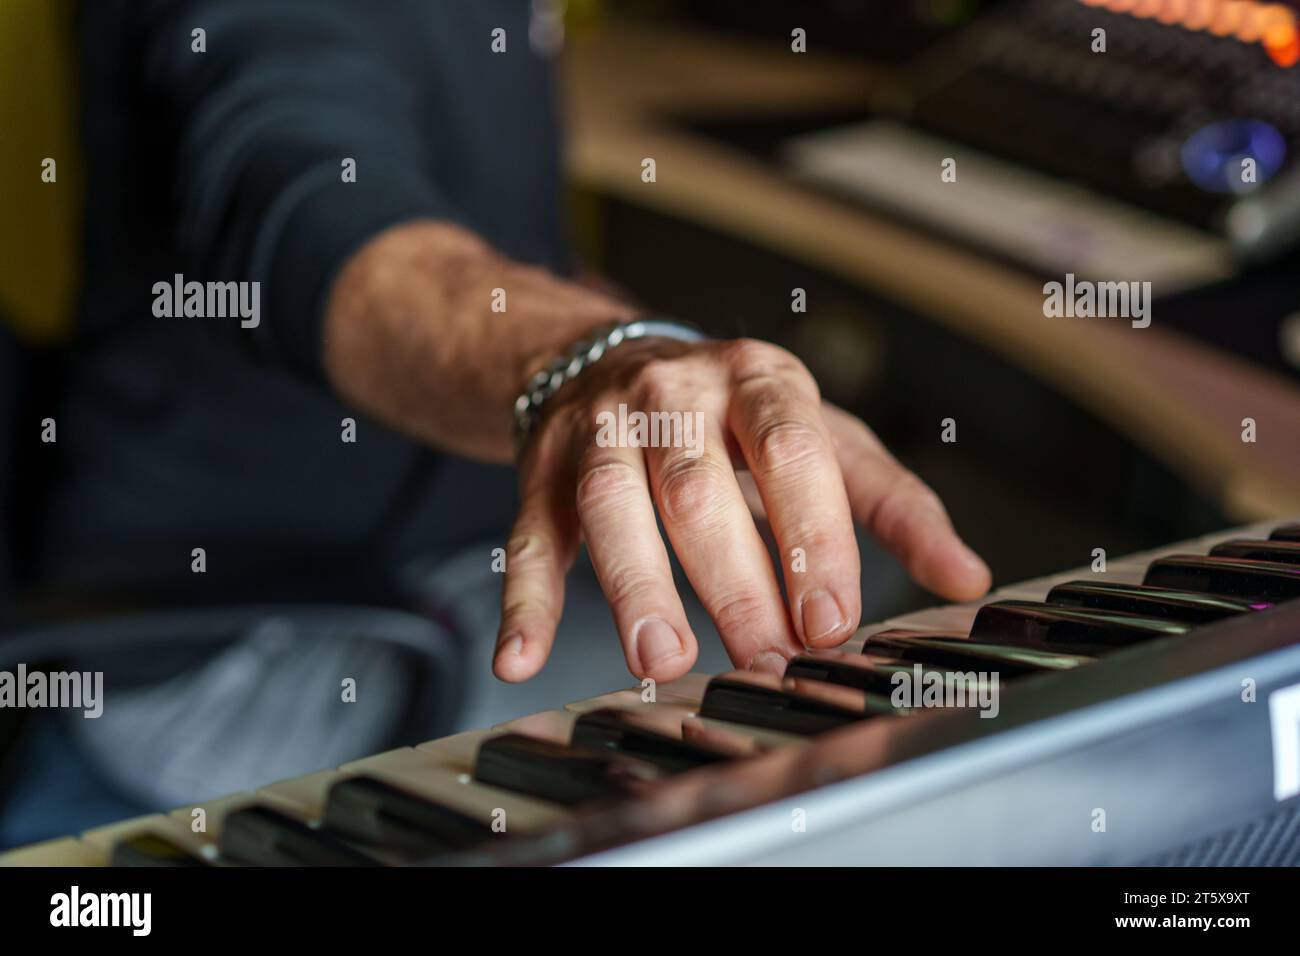 Primo piano delle mani di un musicista che suona una tastiera elettronica concentrata su dita e tasti, catturando l'essenza della creazione musicale. Foto Stock